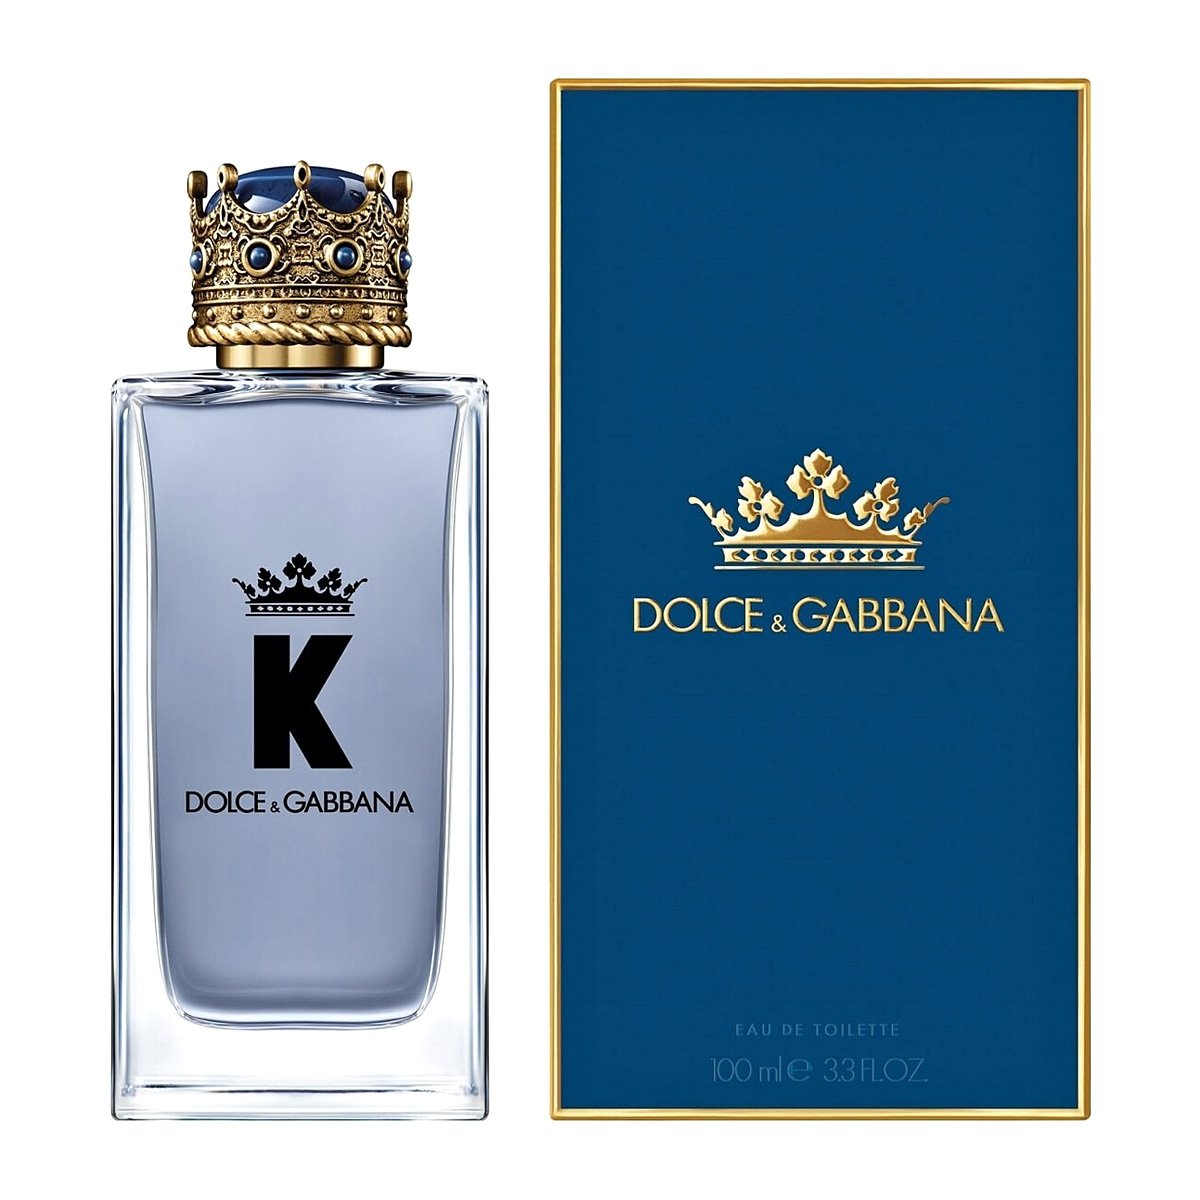 Dolce&Gabbana K 100ml edt